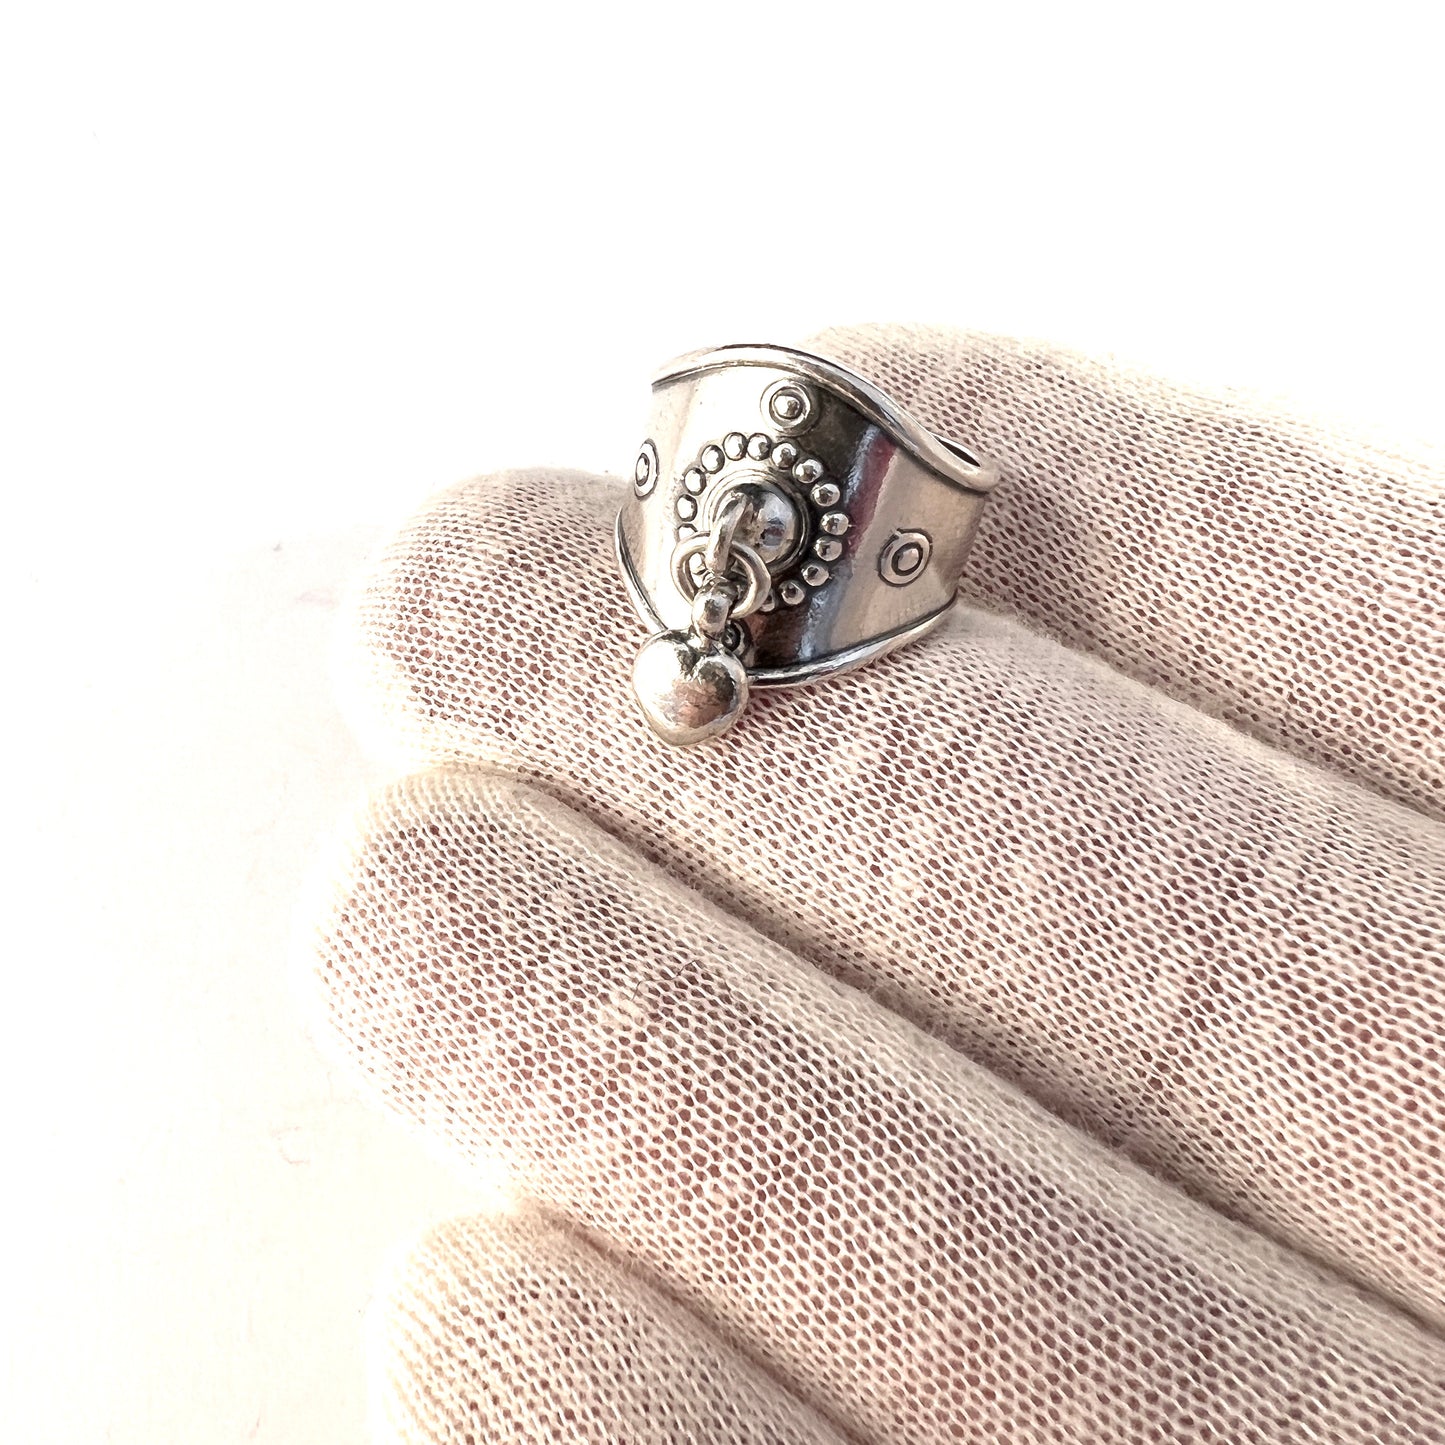 Kalevala Koru, Finland. Vintage Sterling Silver Heart Charm Ring.